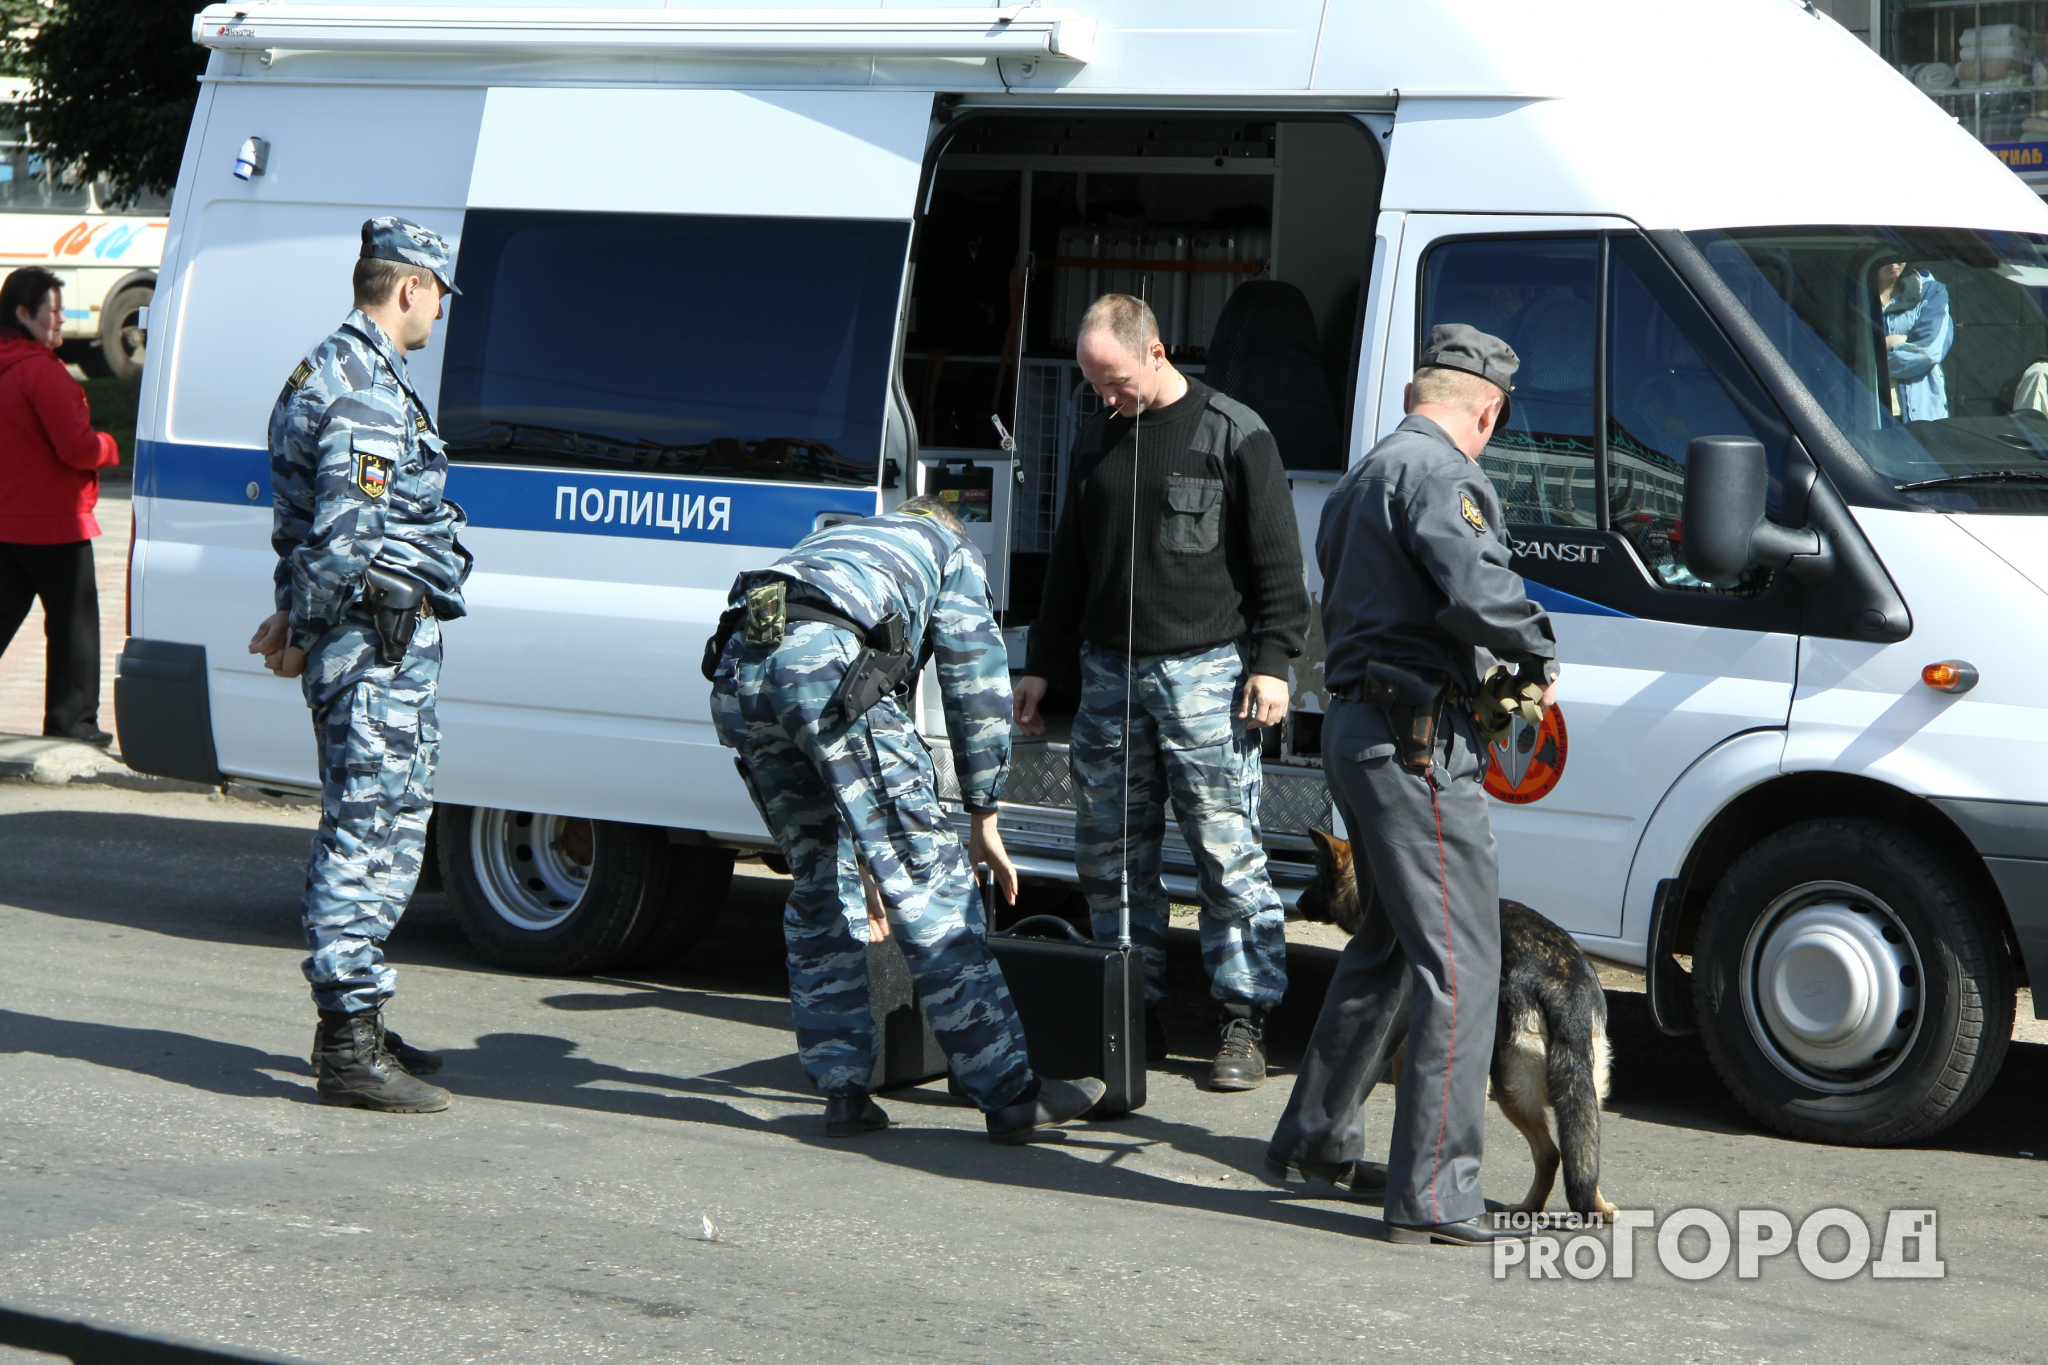 Йошкаролинка заволновалась, увидев полицейских у подъезда